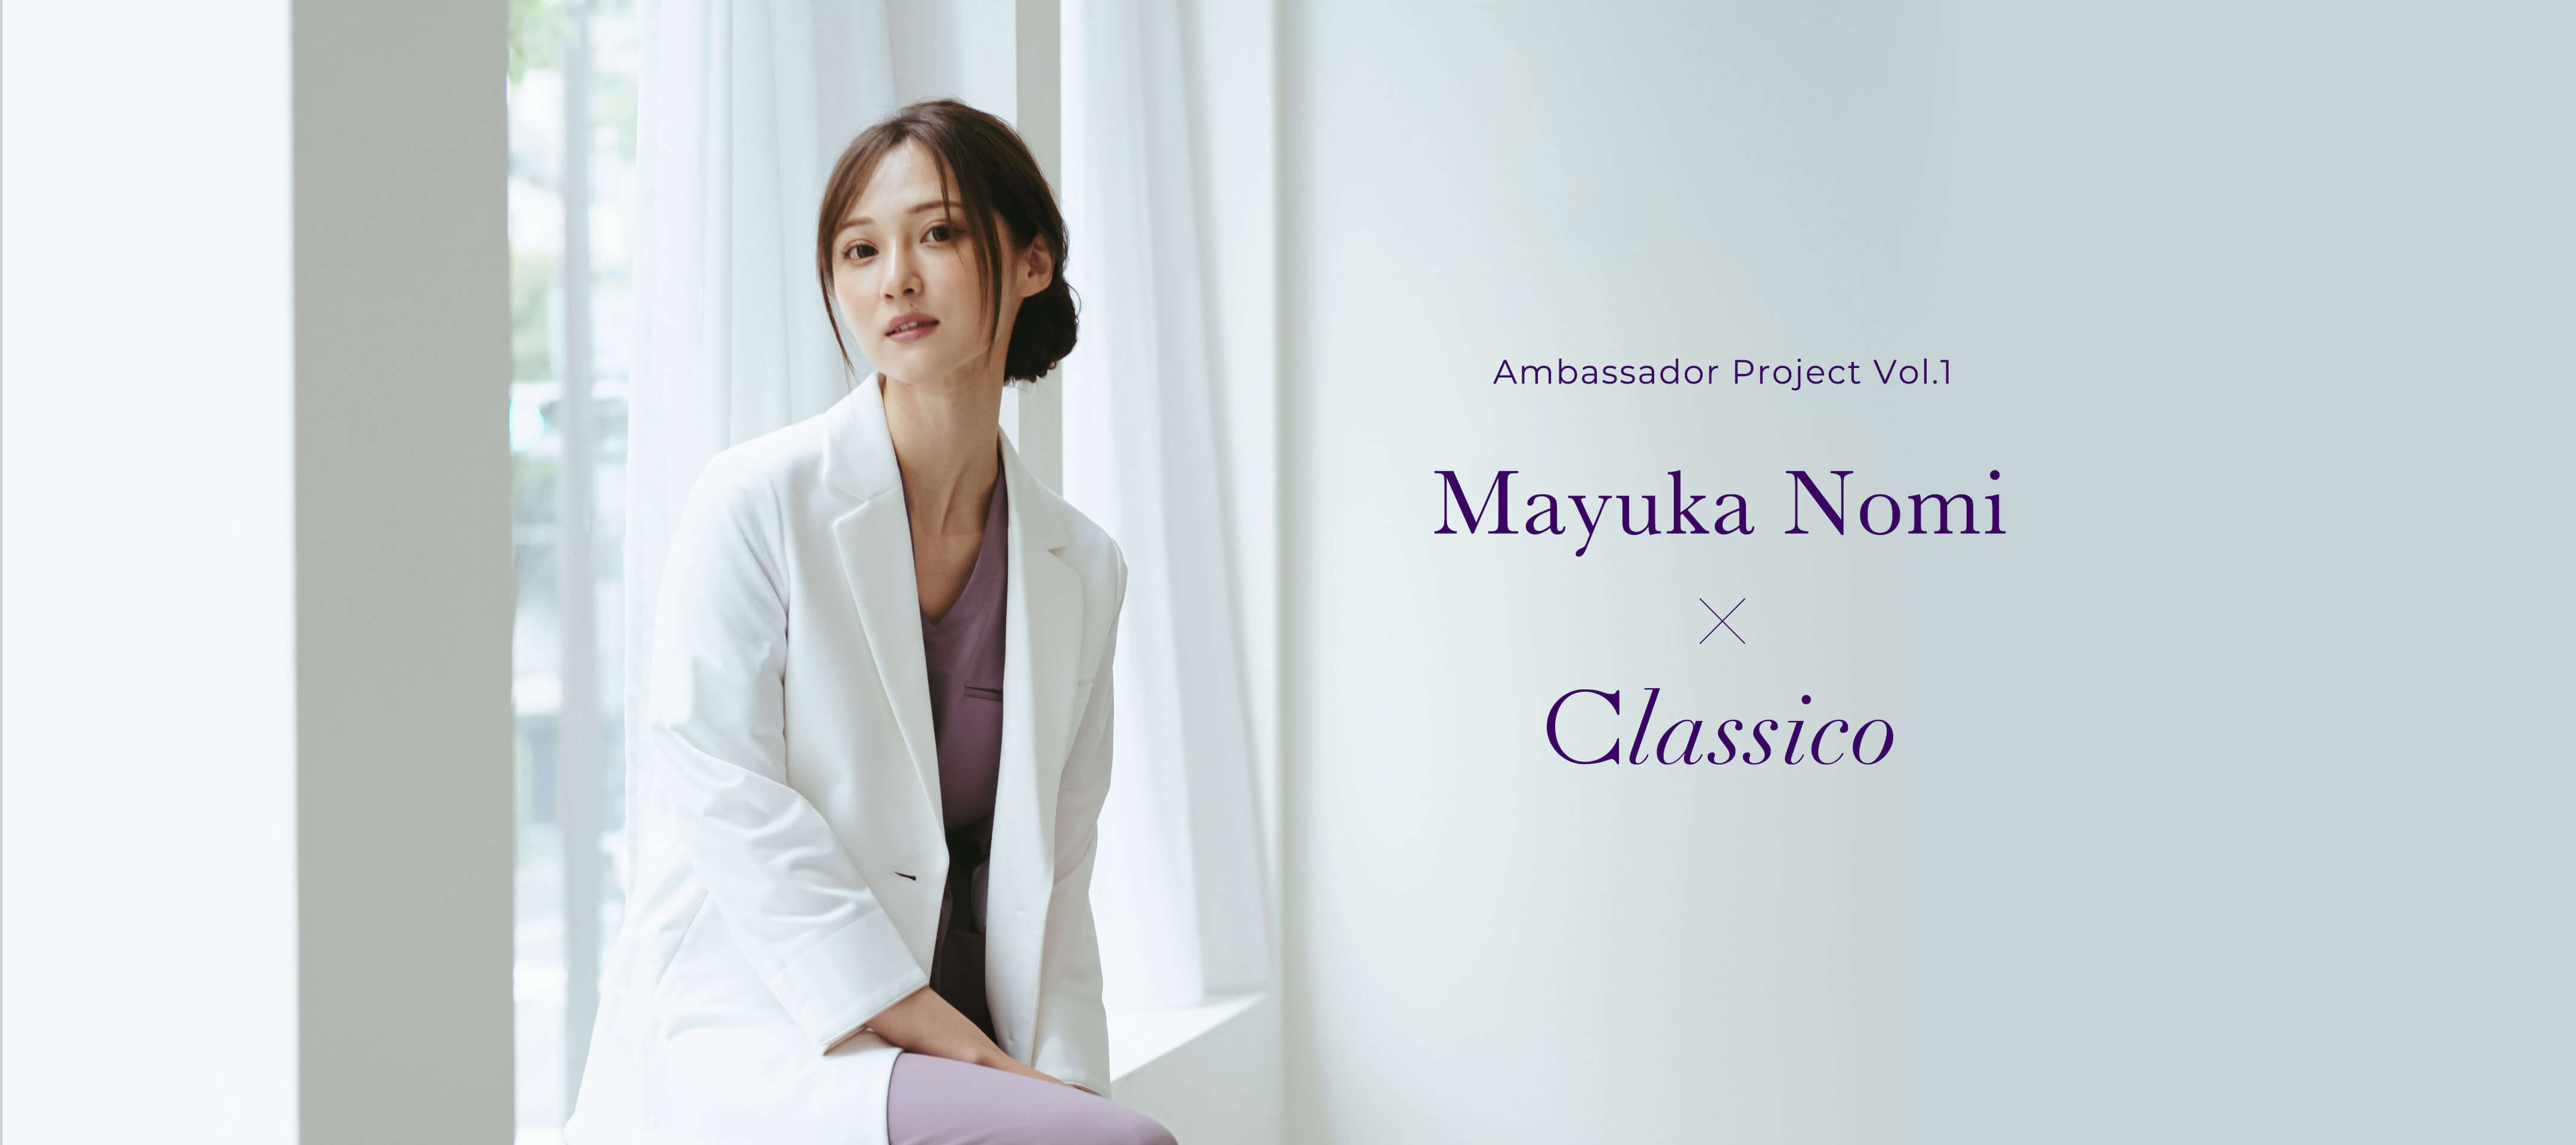 Ambassador Project Vol.1 Mayuka Nomi x Classico